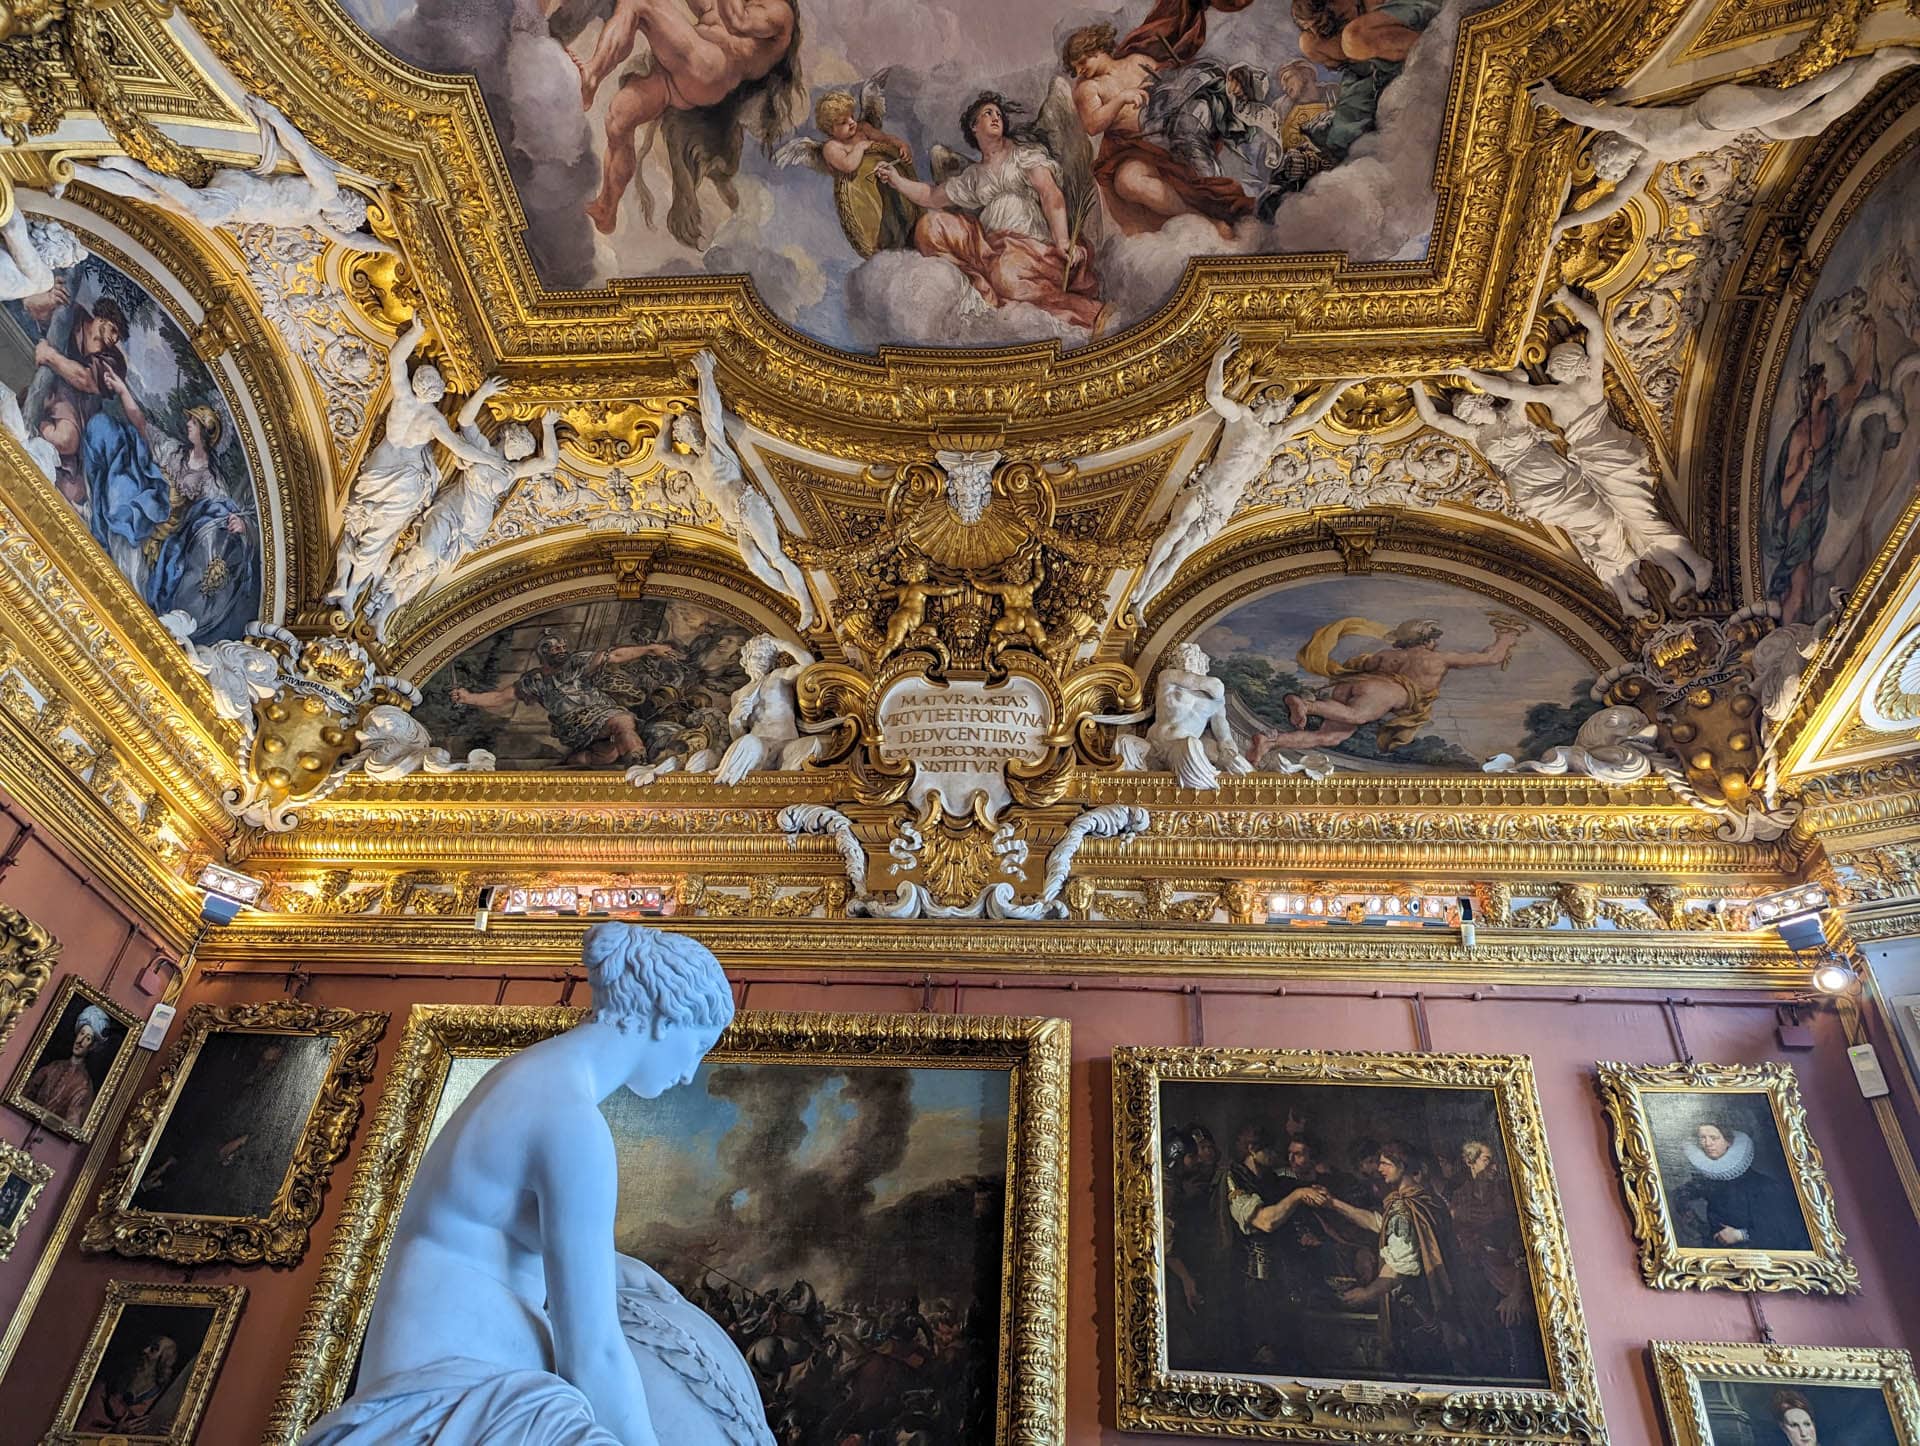 statue against elaborate ceiling